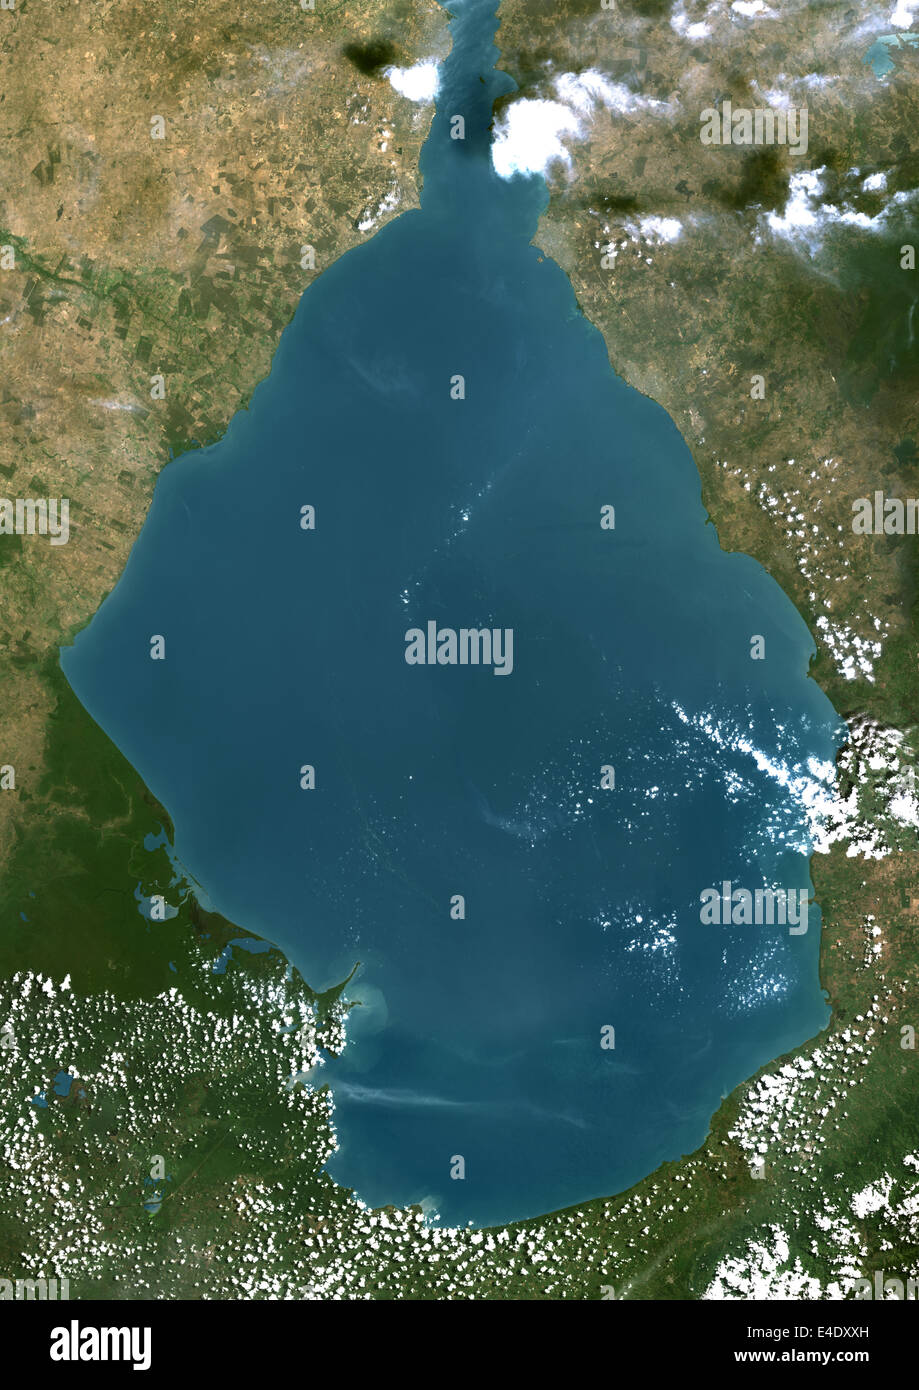 Maracaibo-See, Venezuela, Echtfarben-Satellitenbild. Echtfarben-Satellitenbild von Maracaibo-See in Venezuela, Verbindung Stockfoto